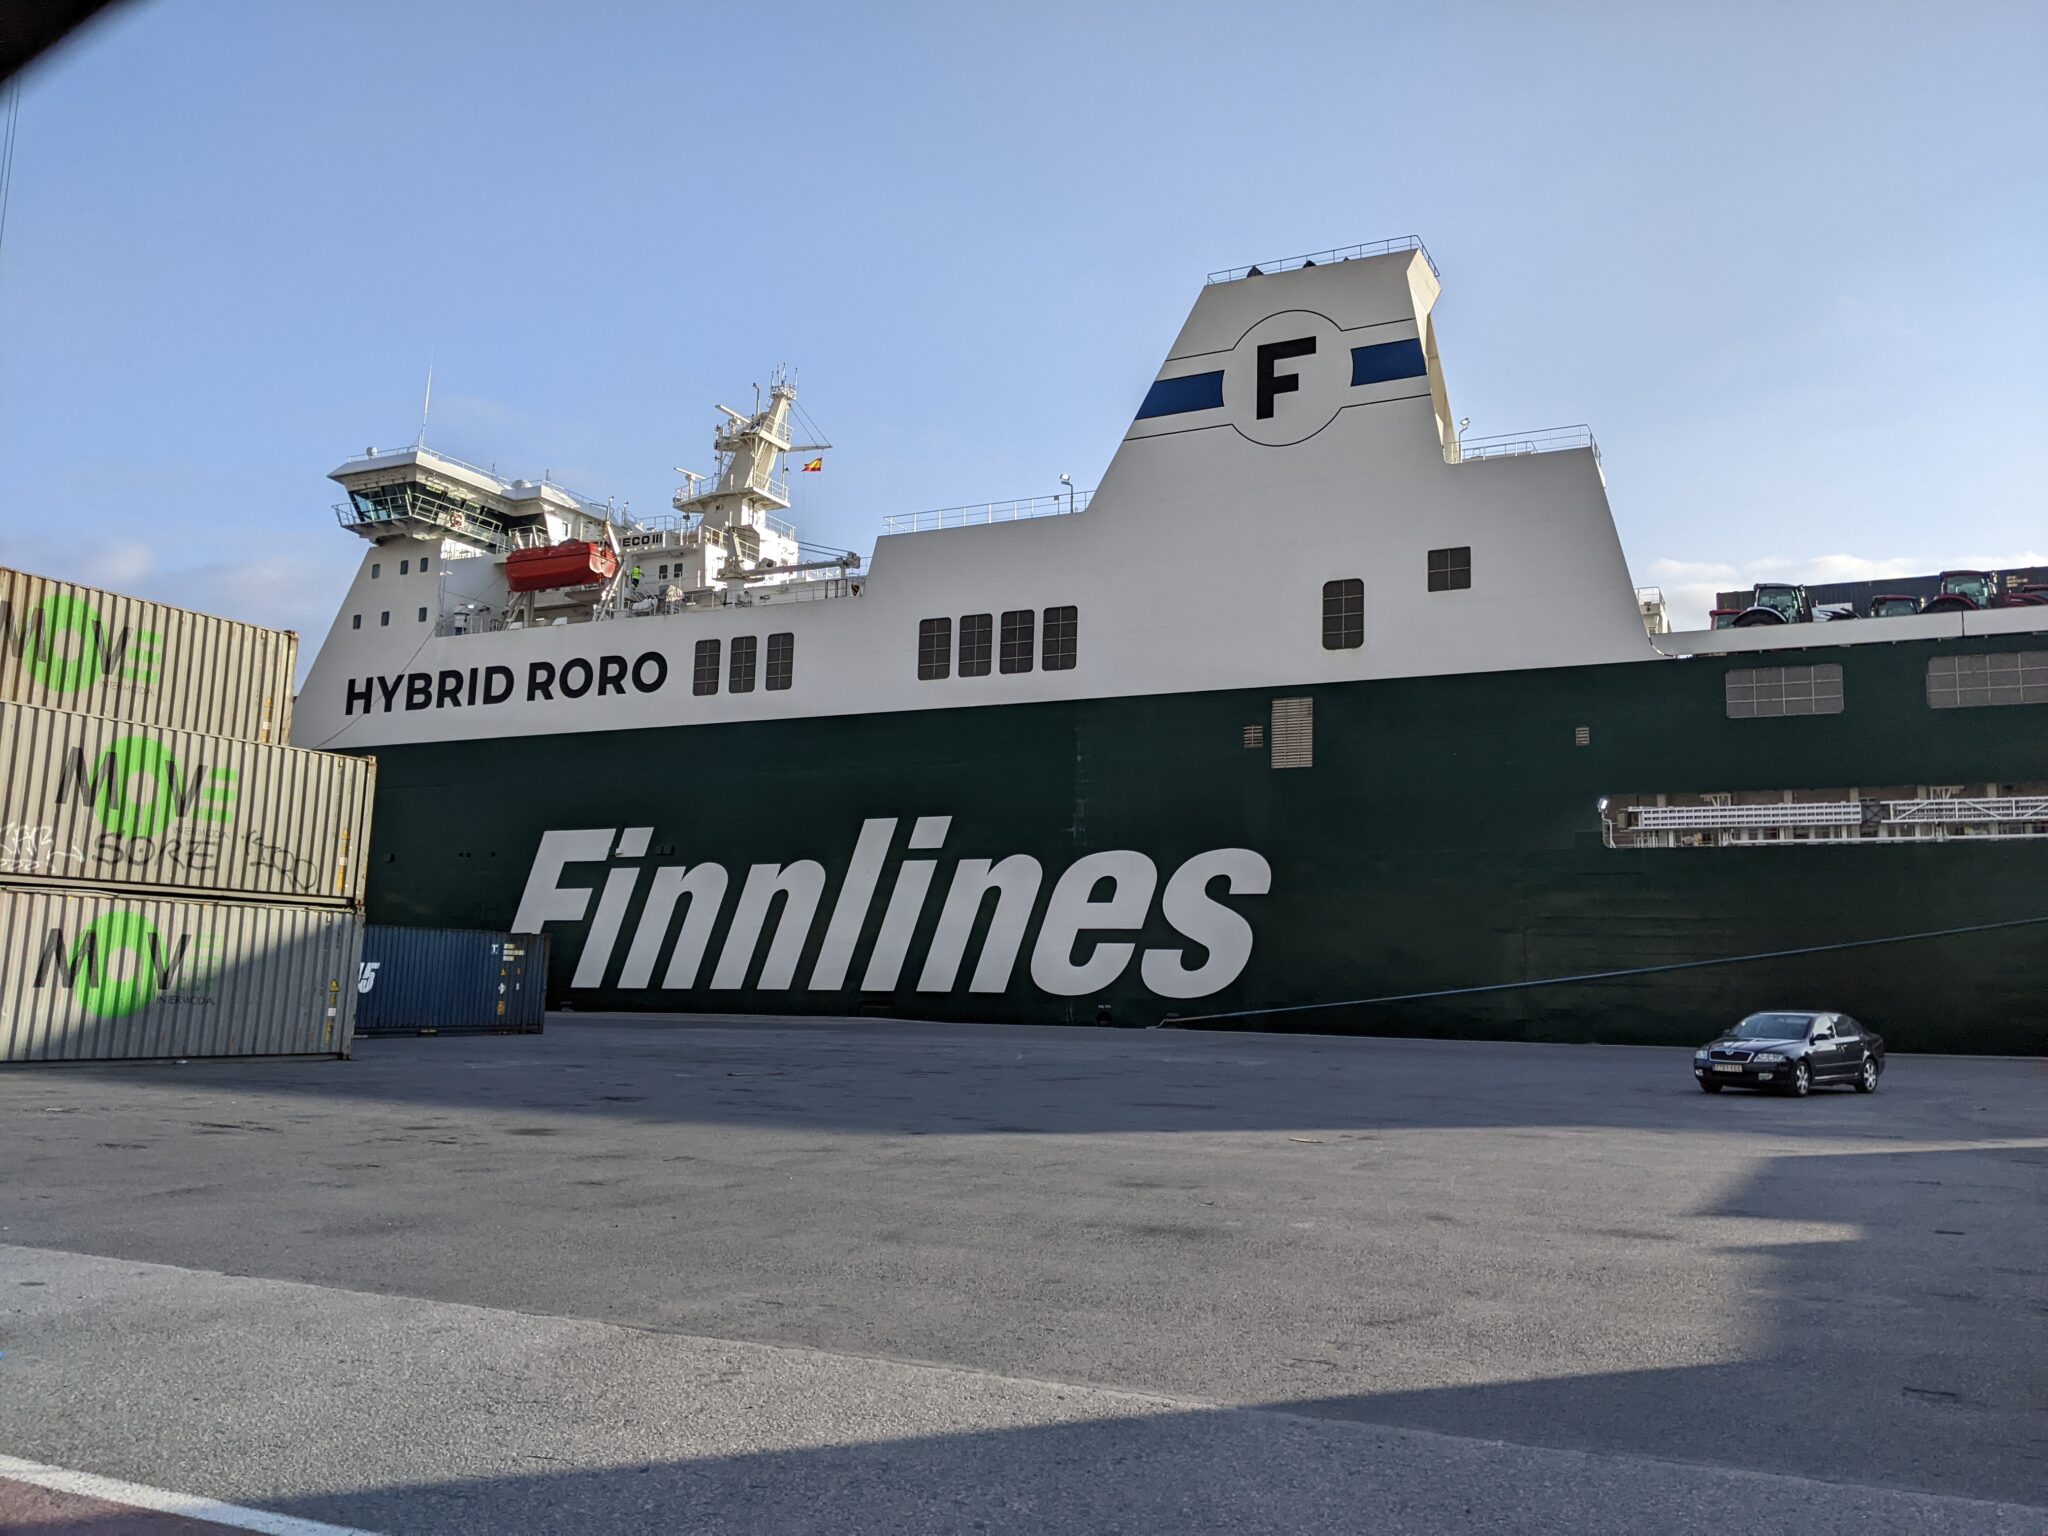 Beeld van Finnlines schip met tekst: hybrid roro